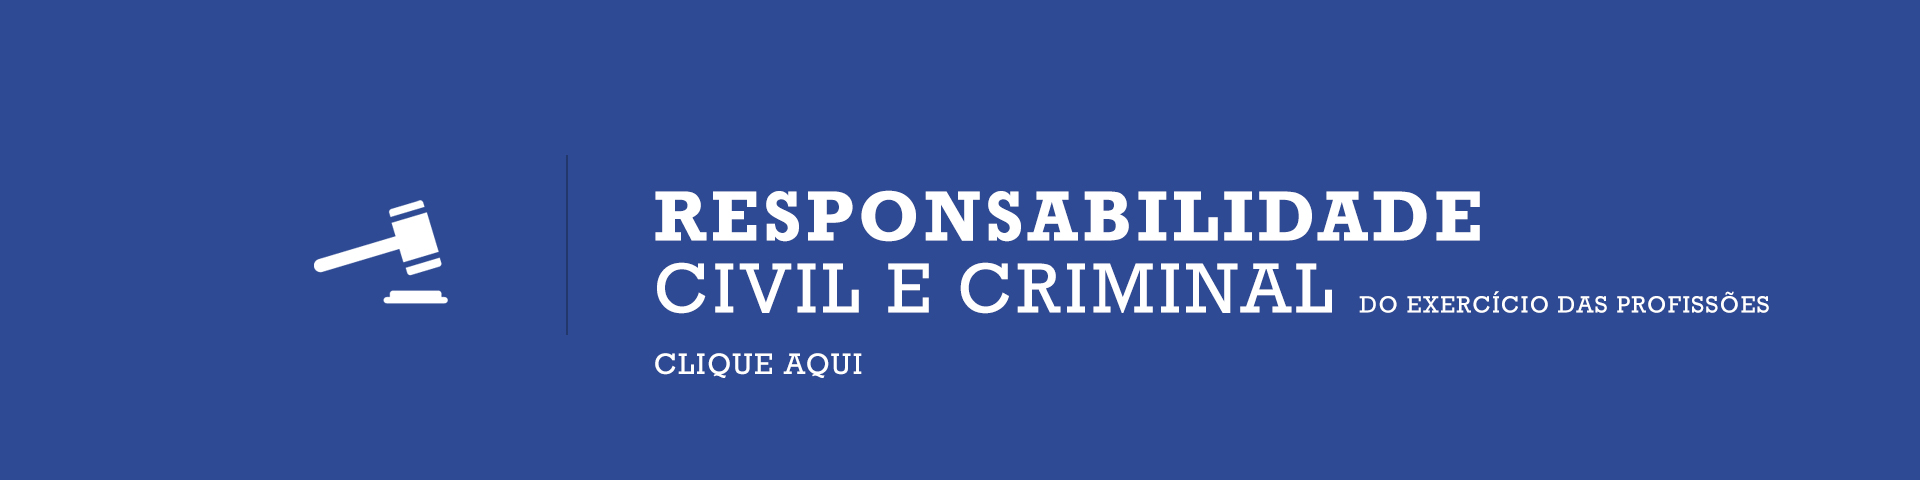 Responsabilidade Civil e Criminal do Exercício das Profissões